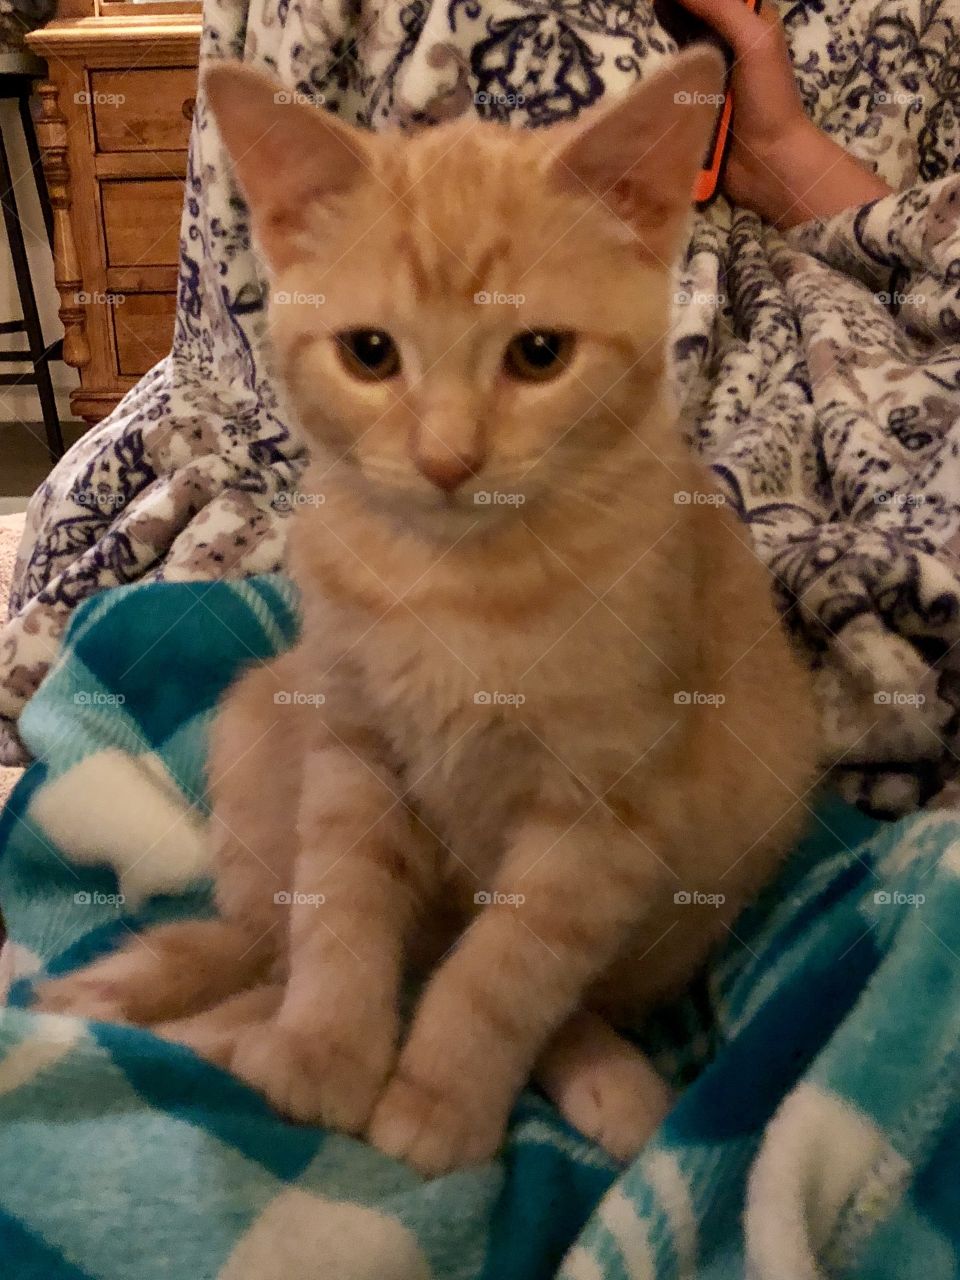 Sad-eyed ginger kitten on teal blanket